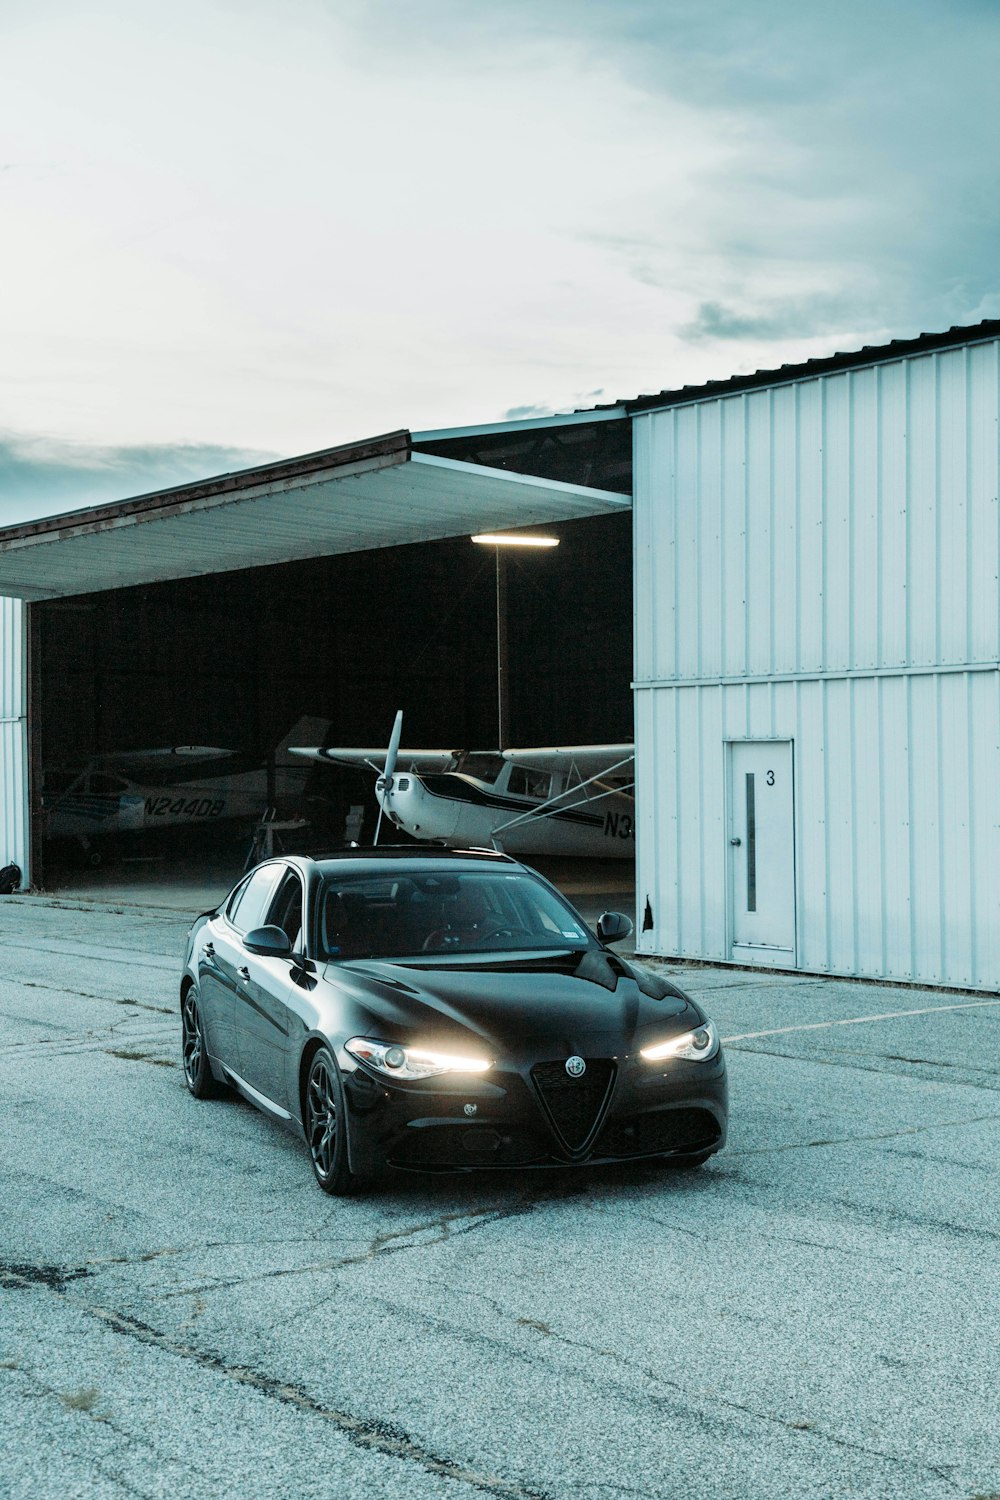 Une voiture noire garée devant un hangar